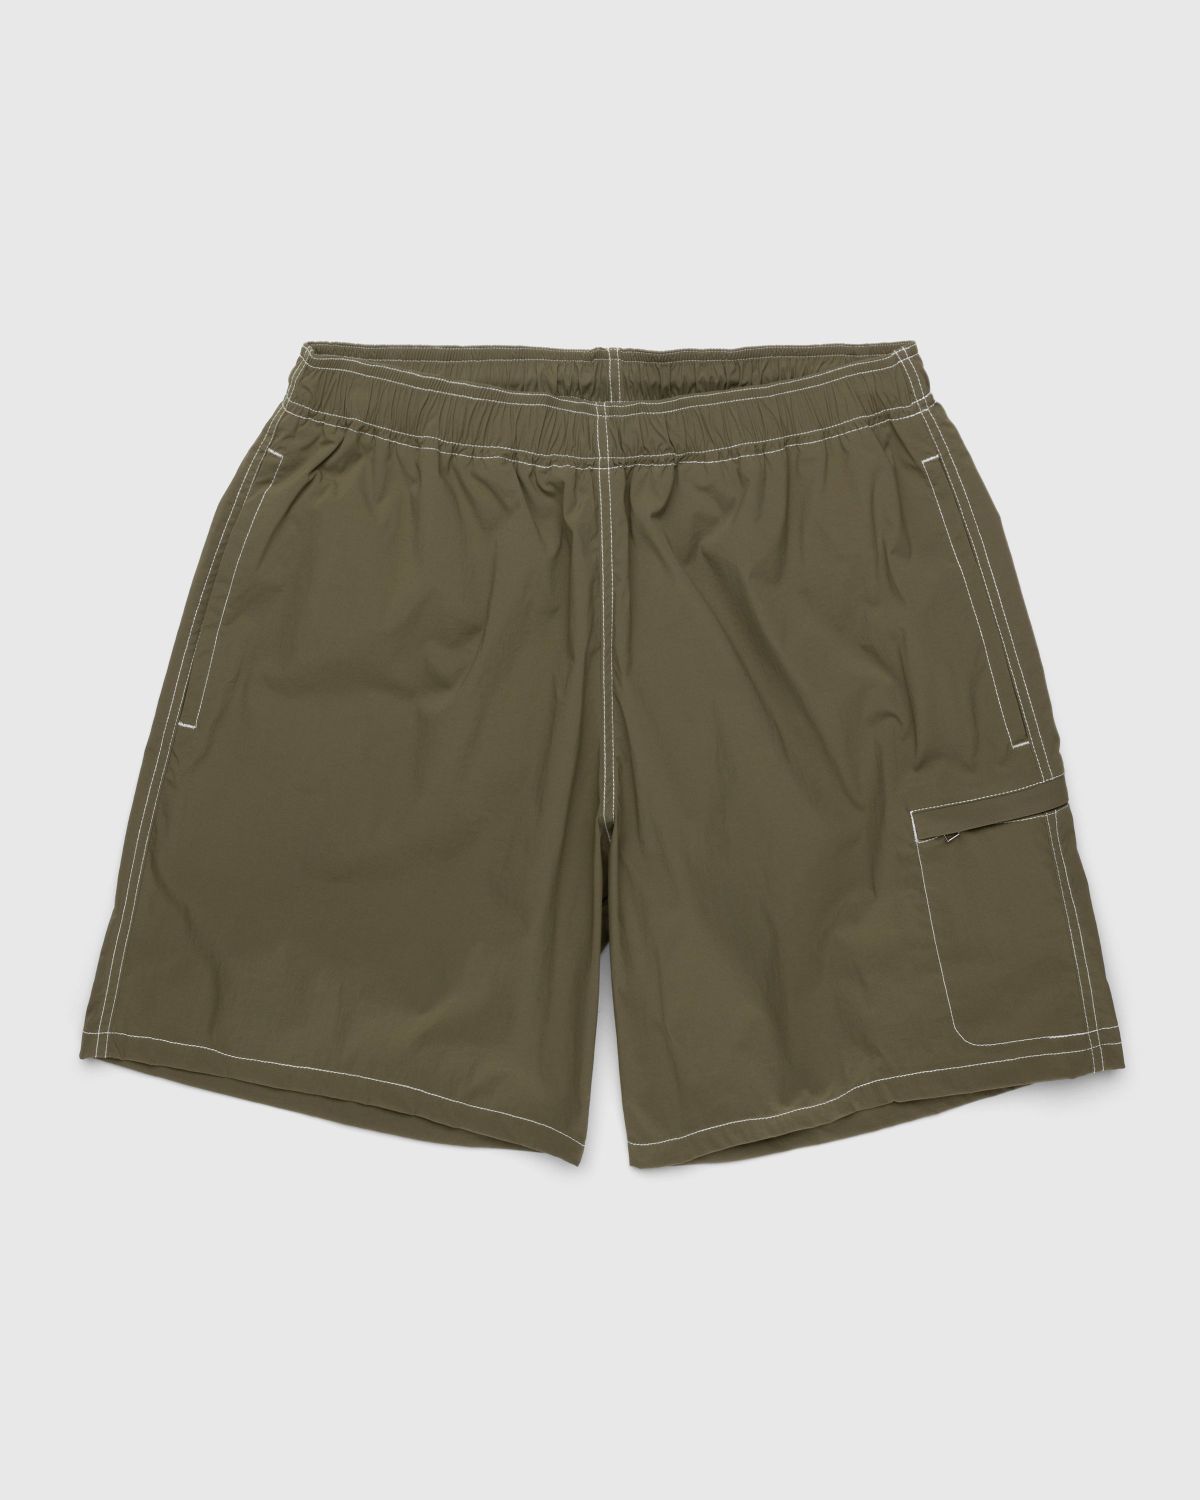 Highsnobiety – Side Cargo Shorts Khaki - Active Shorts - Green - Image 1